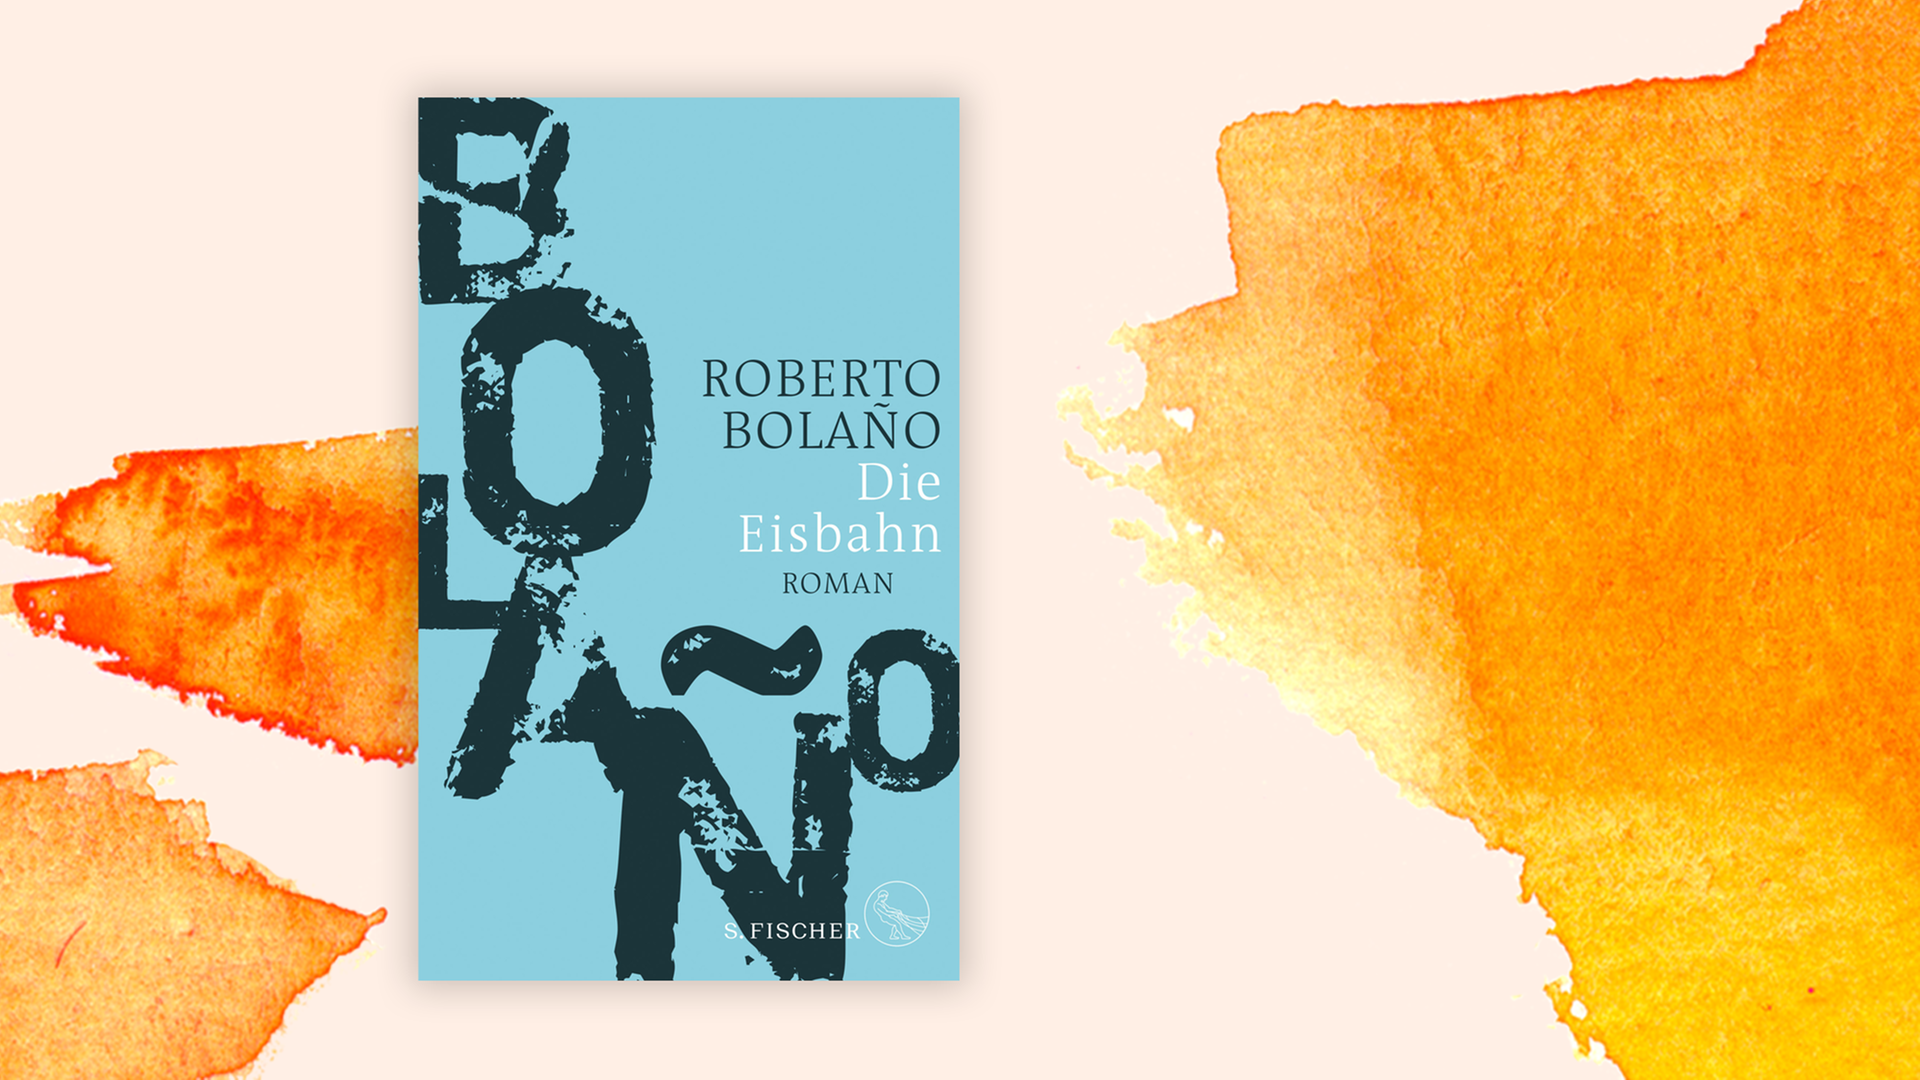 Zu sehen ist das Cover des Buches "Die Eisbahn" von Roberto Bolaño.